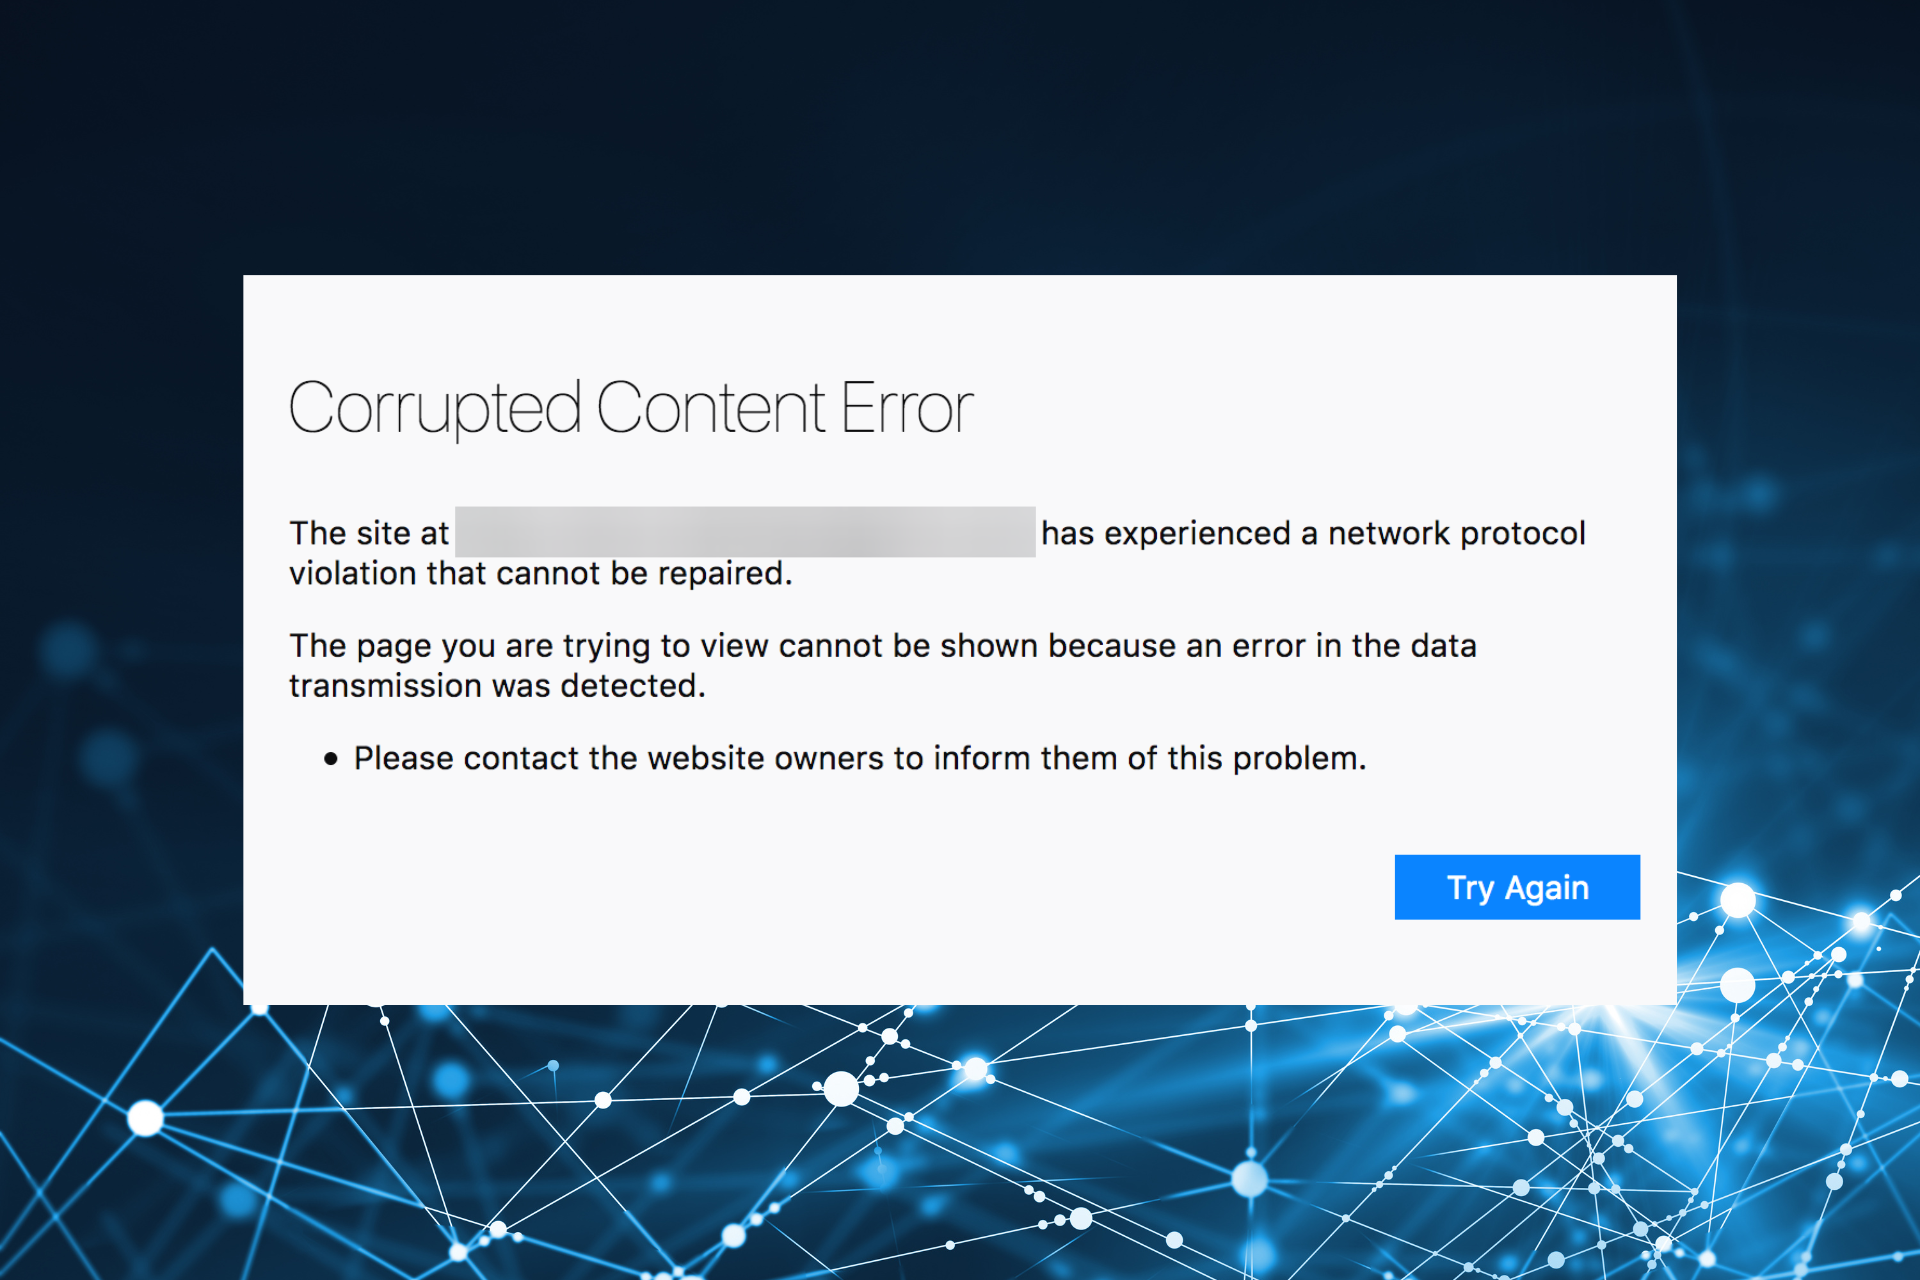 Fix corrupted content error